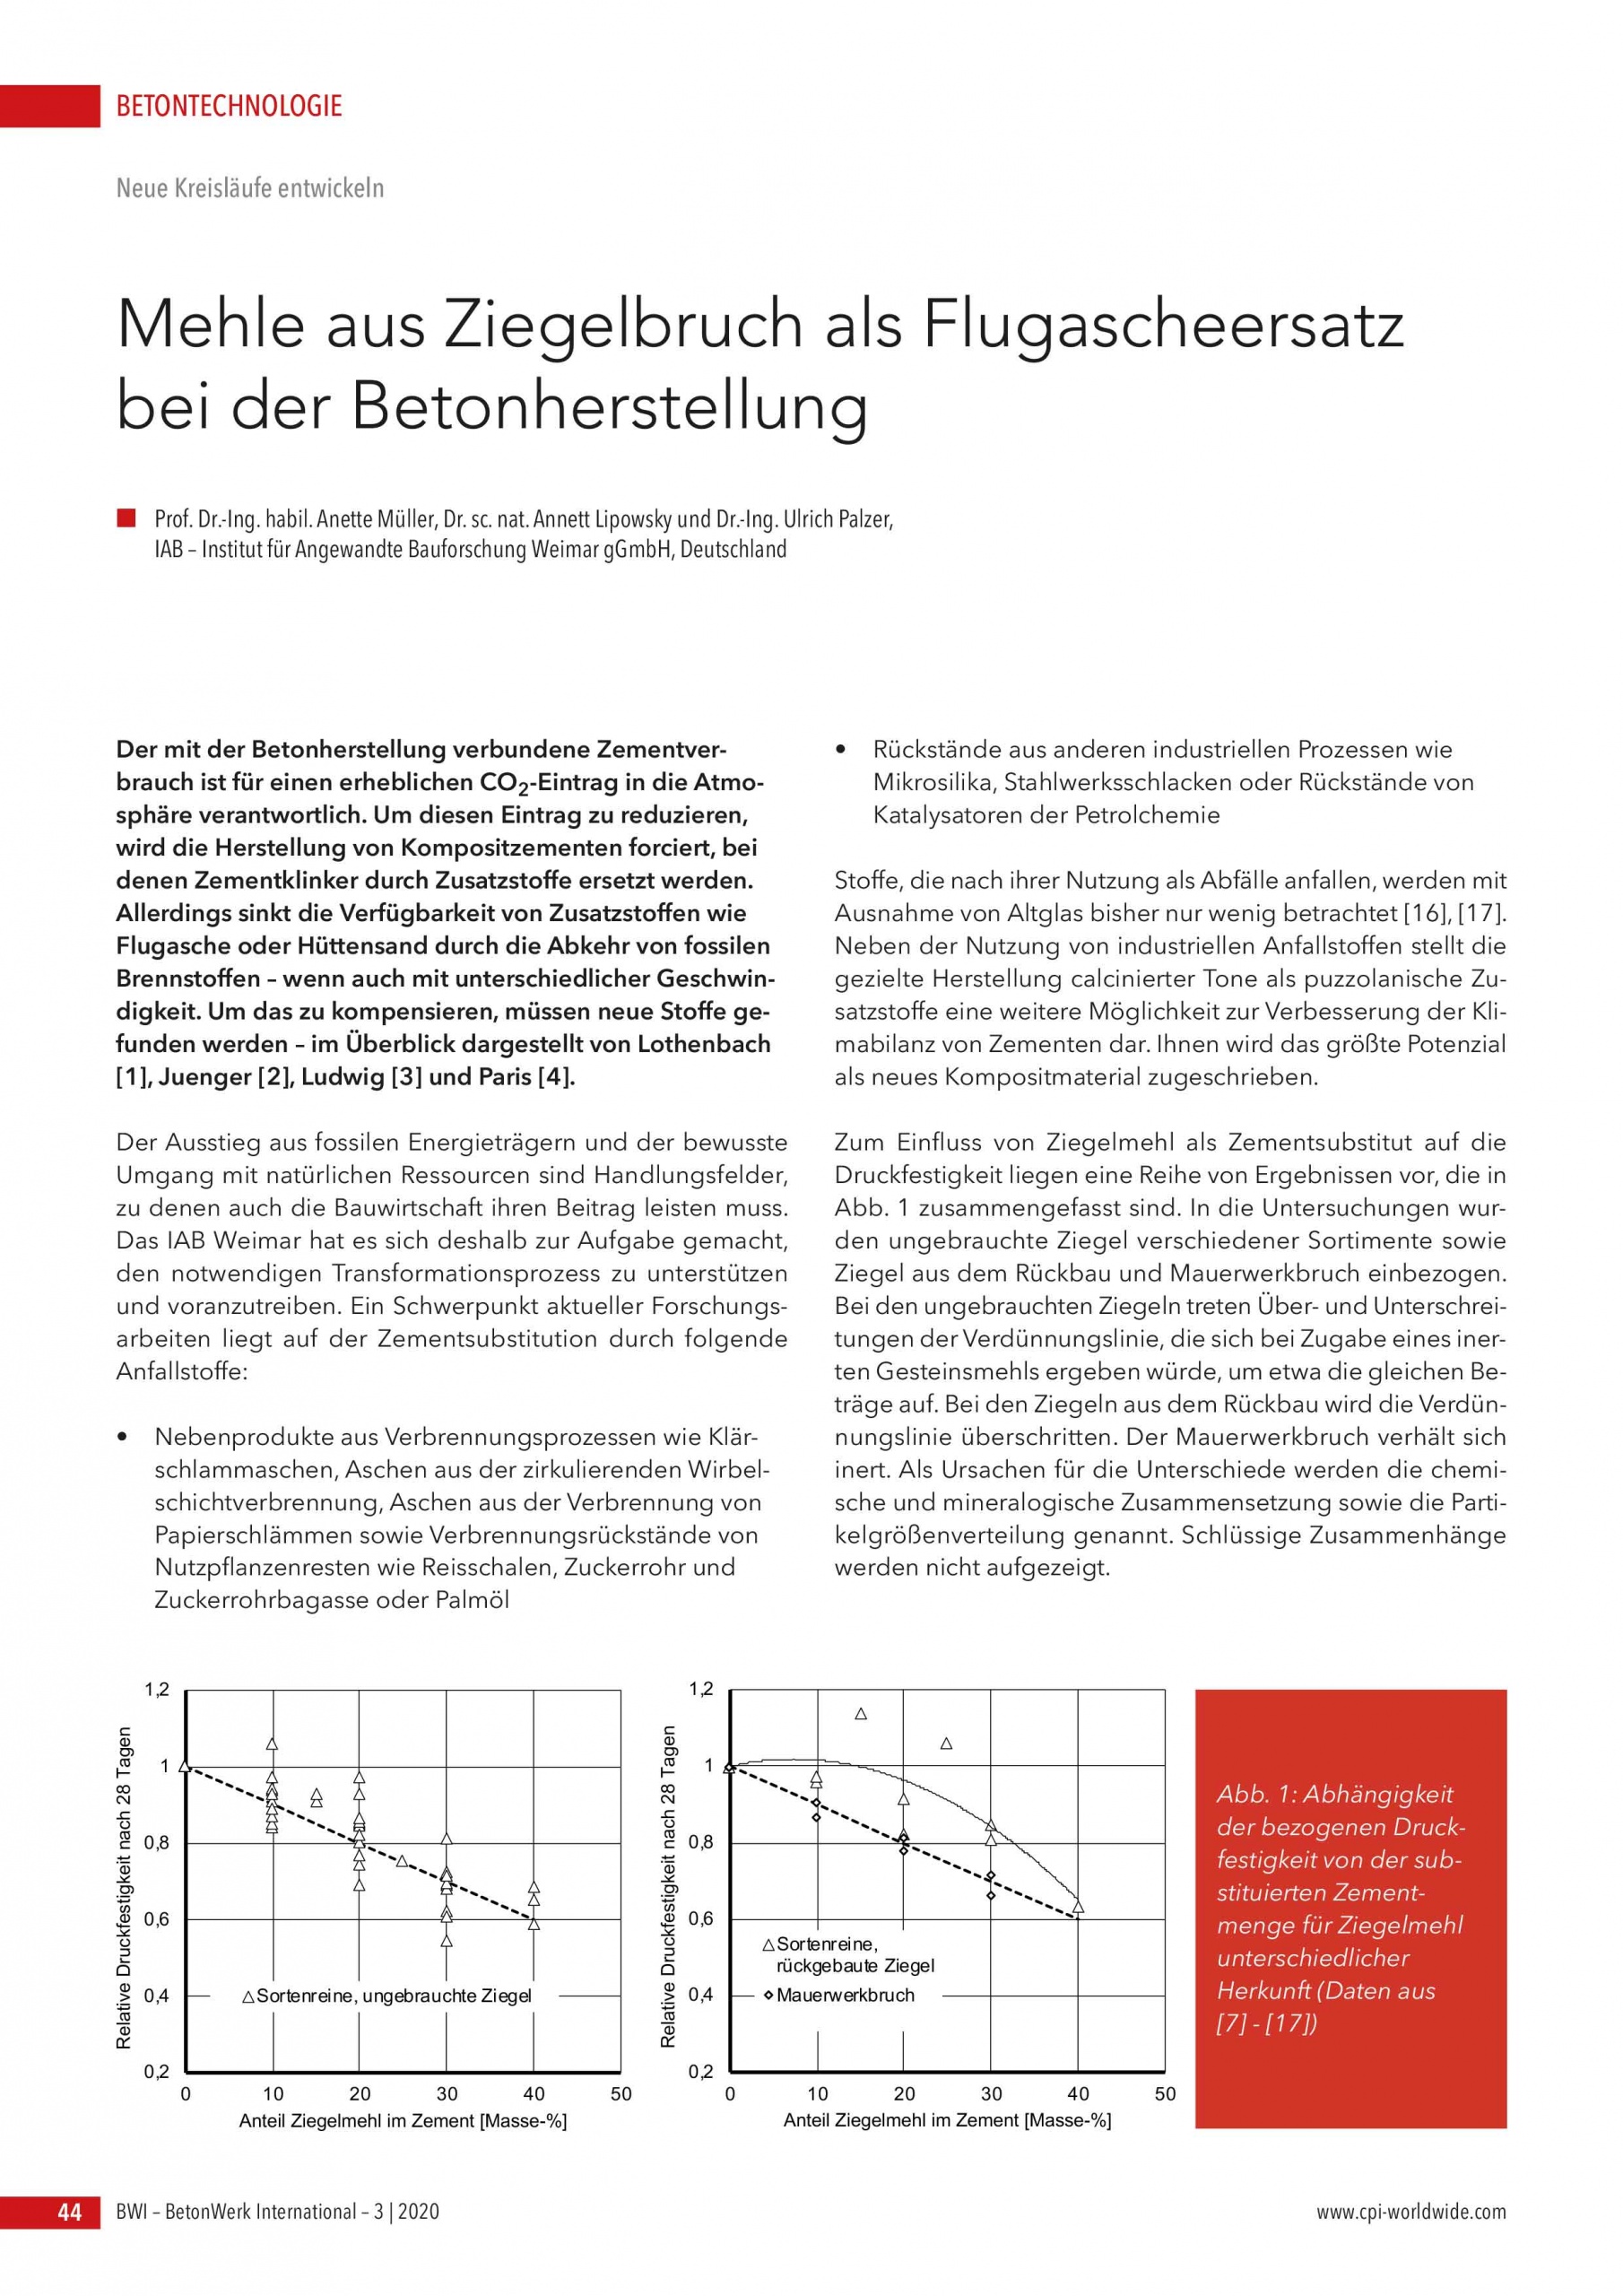 Bild BWI Artikel des IAB Weimar zur Betontechnologie